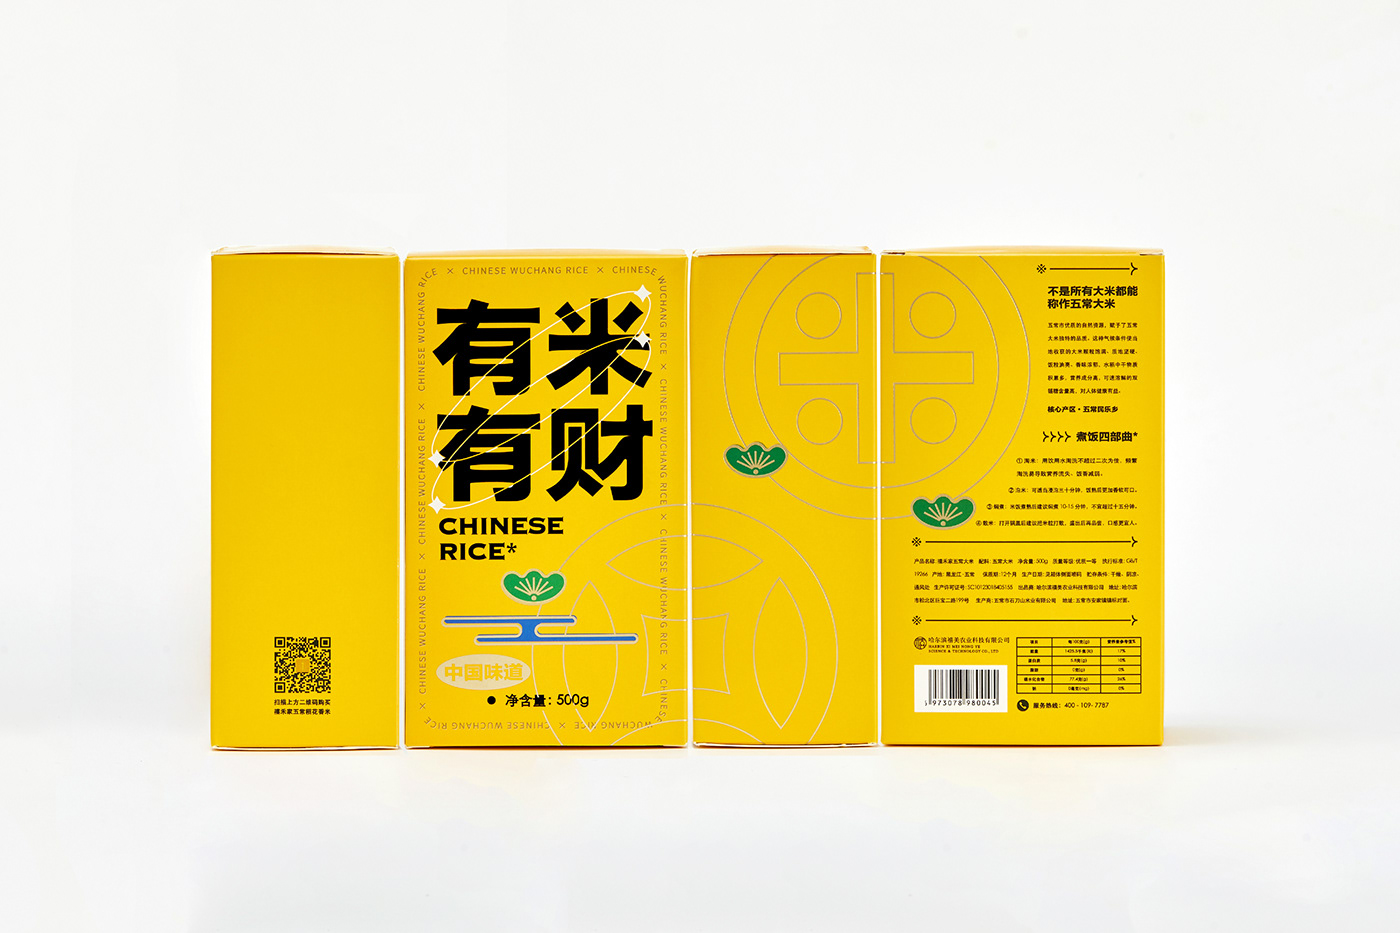 brand branding  logo package Packaging Rice 中国五常 包装 大米 食品包装设计